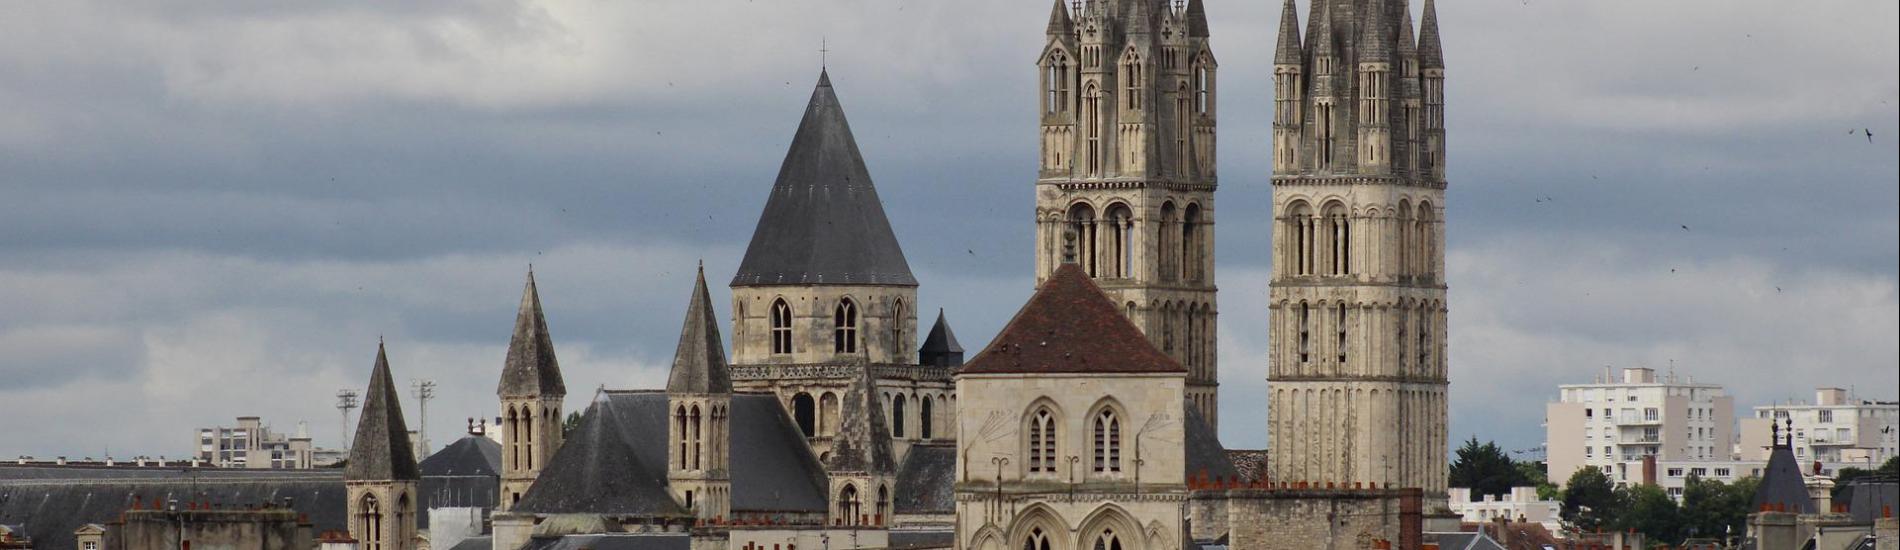 Kirche in Caen, Frankreich